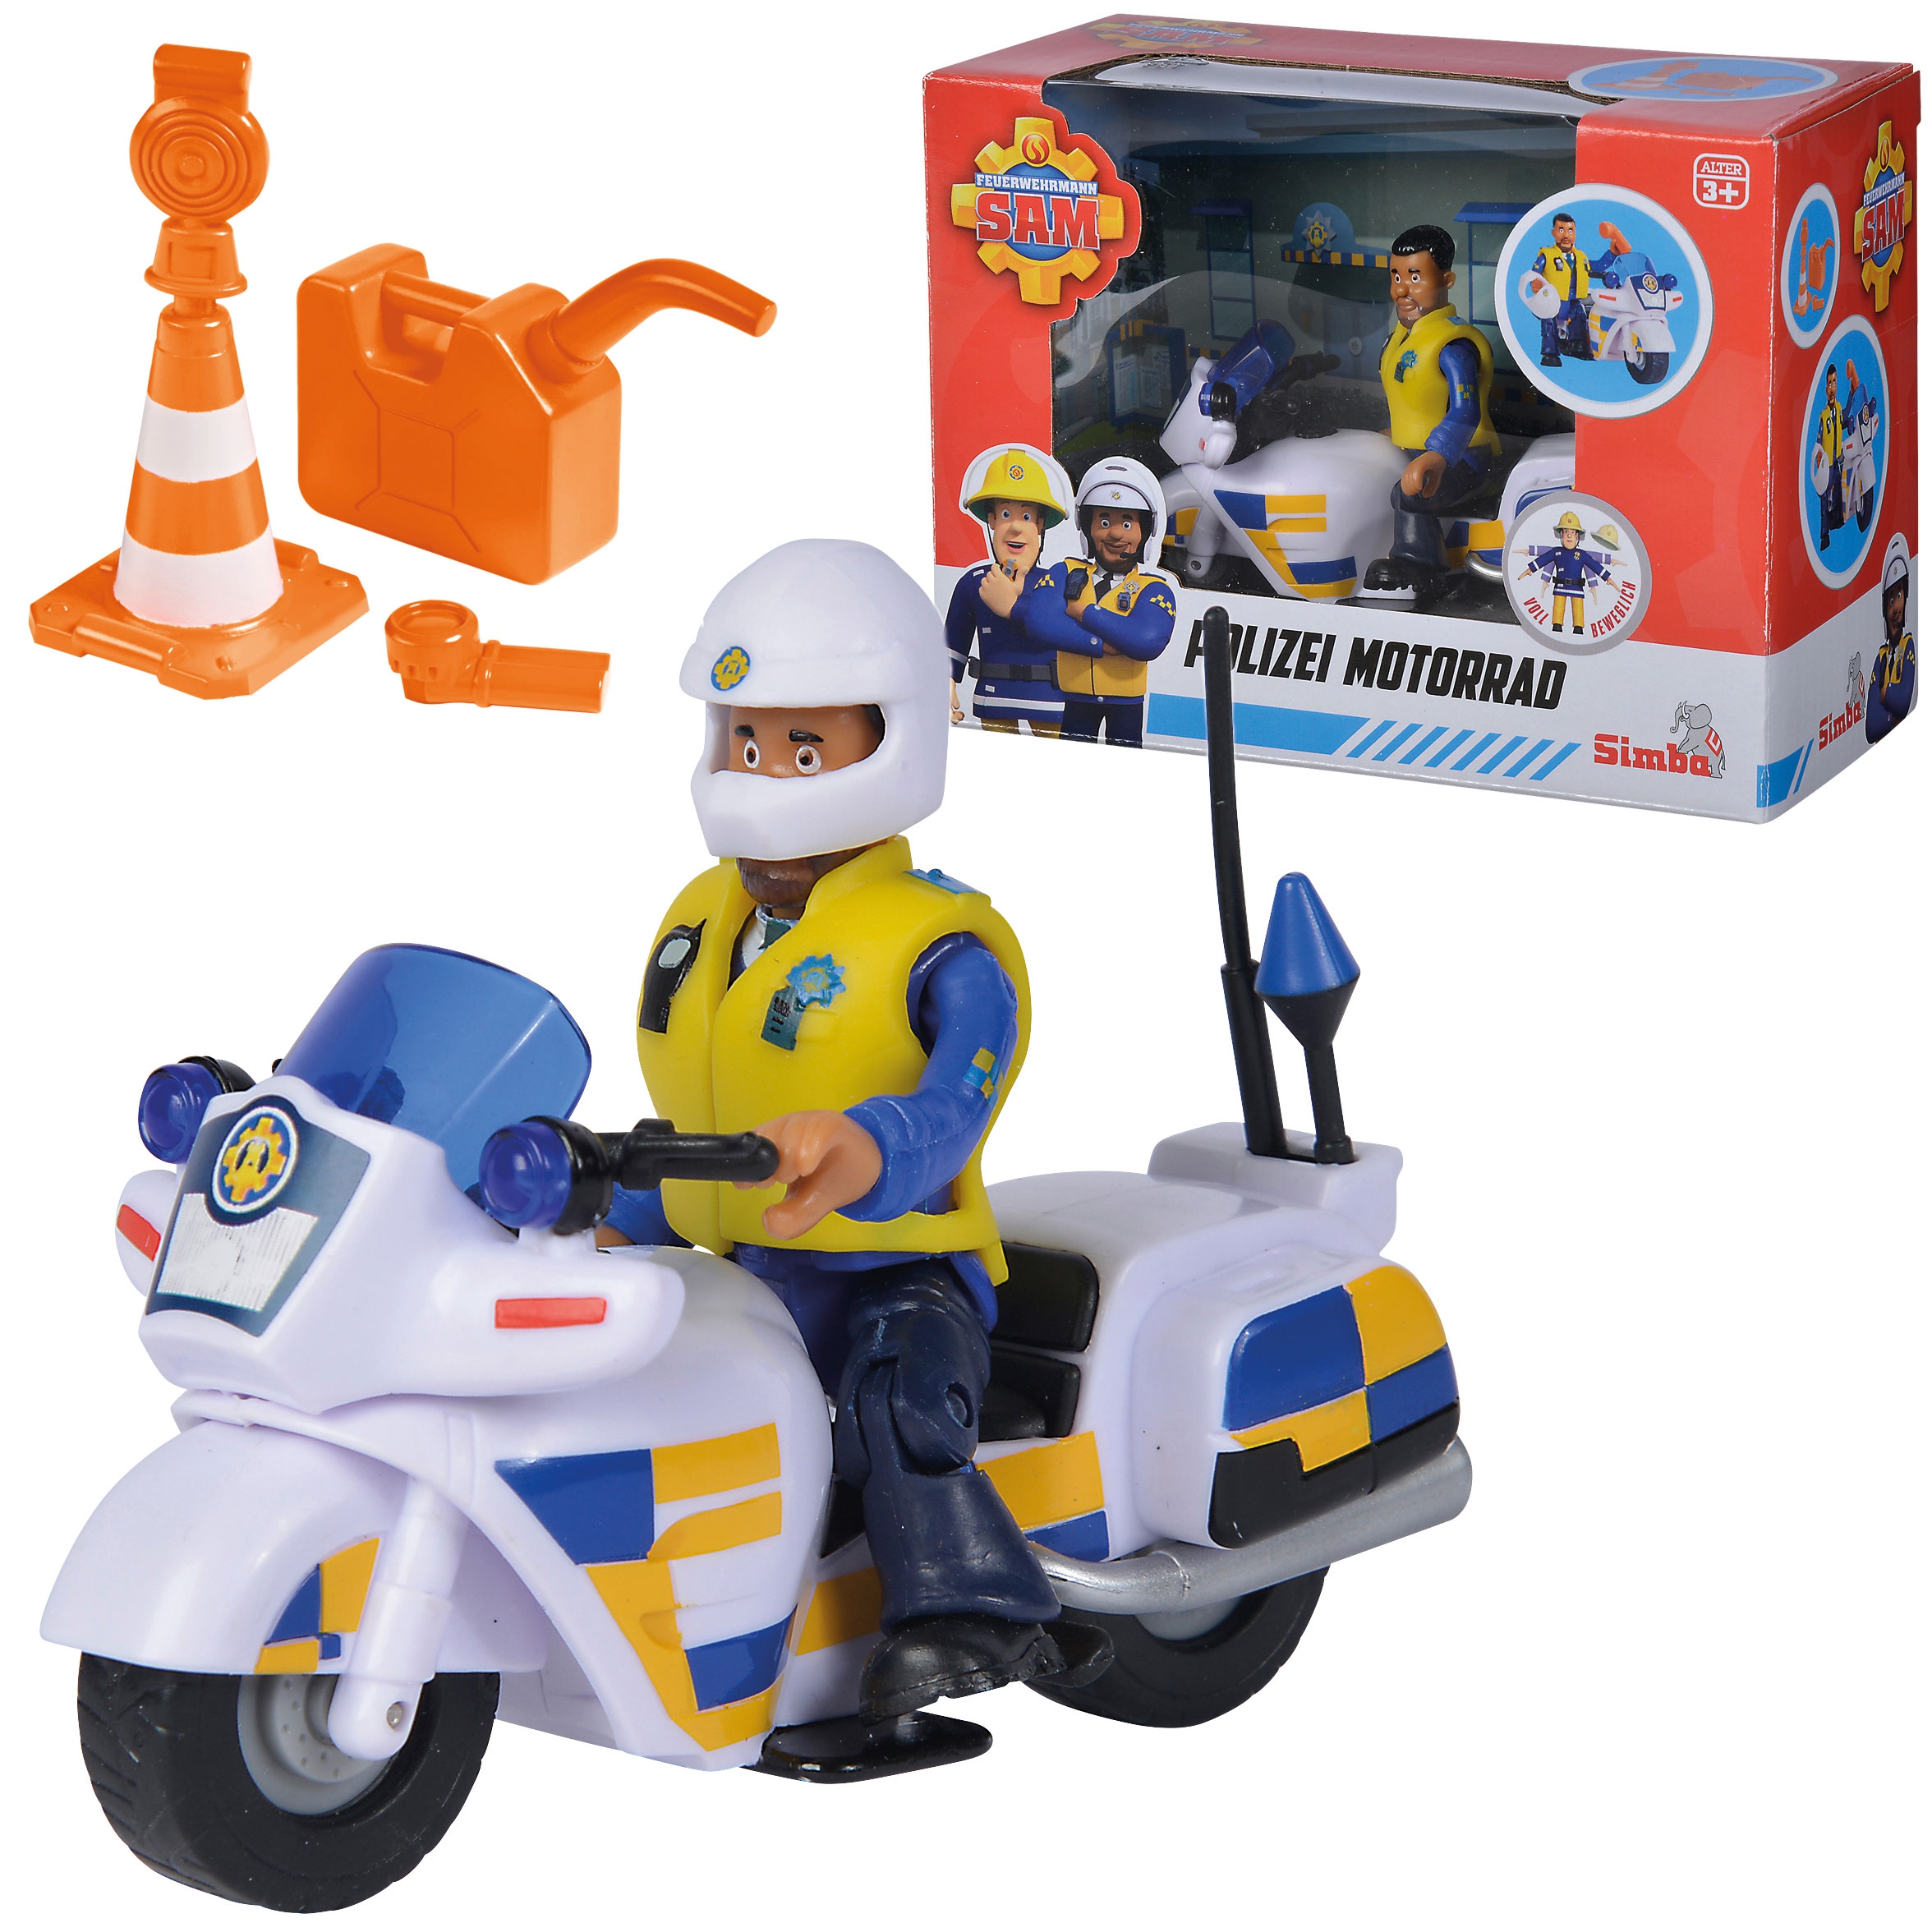 Strażak sam motor policyjny z figurką malcolma + akc, zabawka dla dzieci, Simba